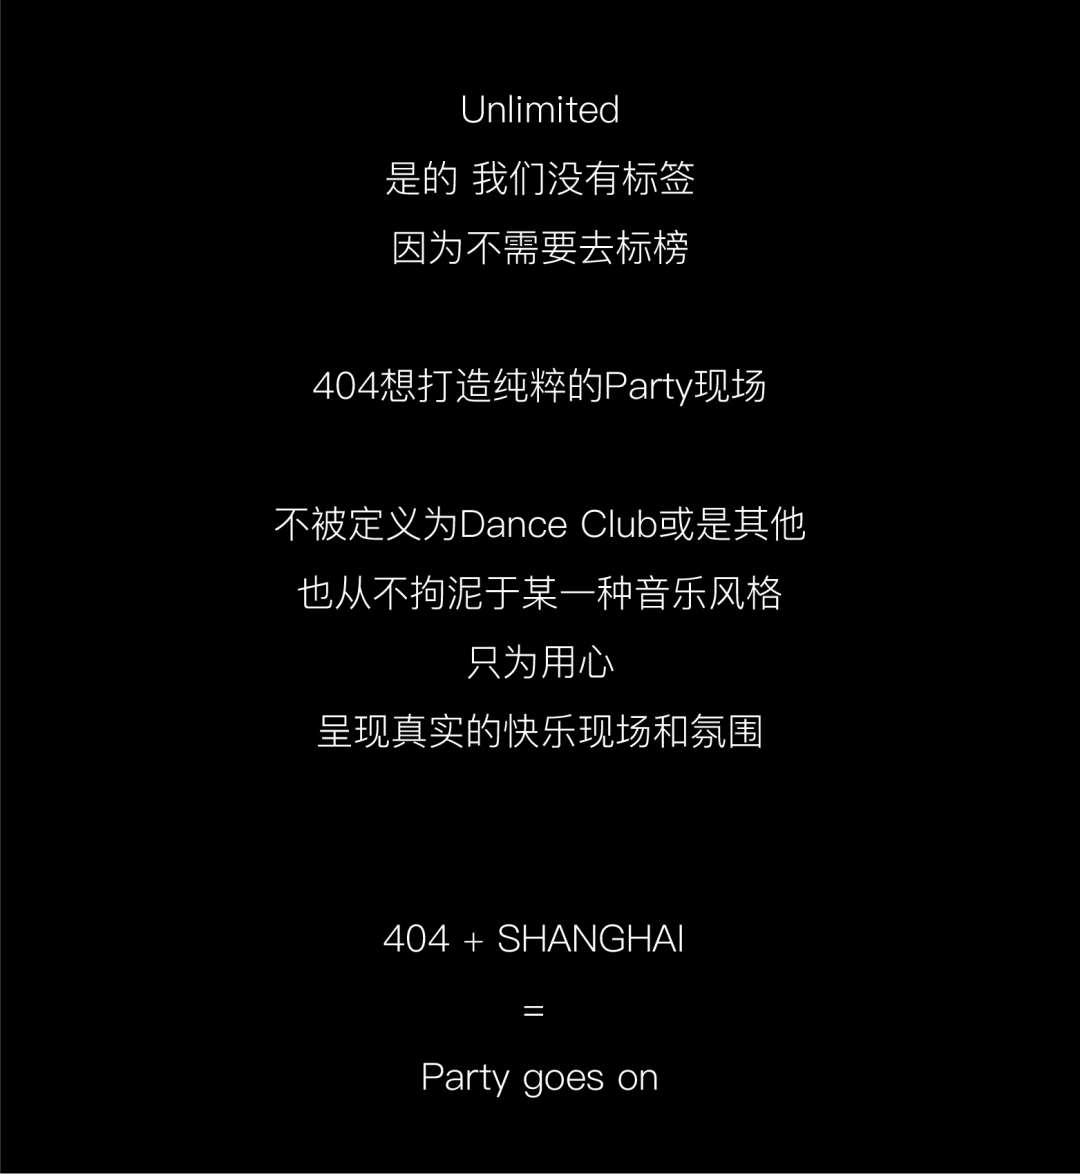 404SH | 及时派对 恰好合拍 .-上海404酒吧/404ClubNotFound